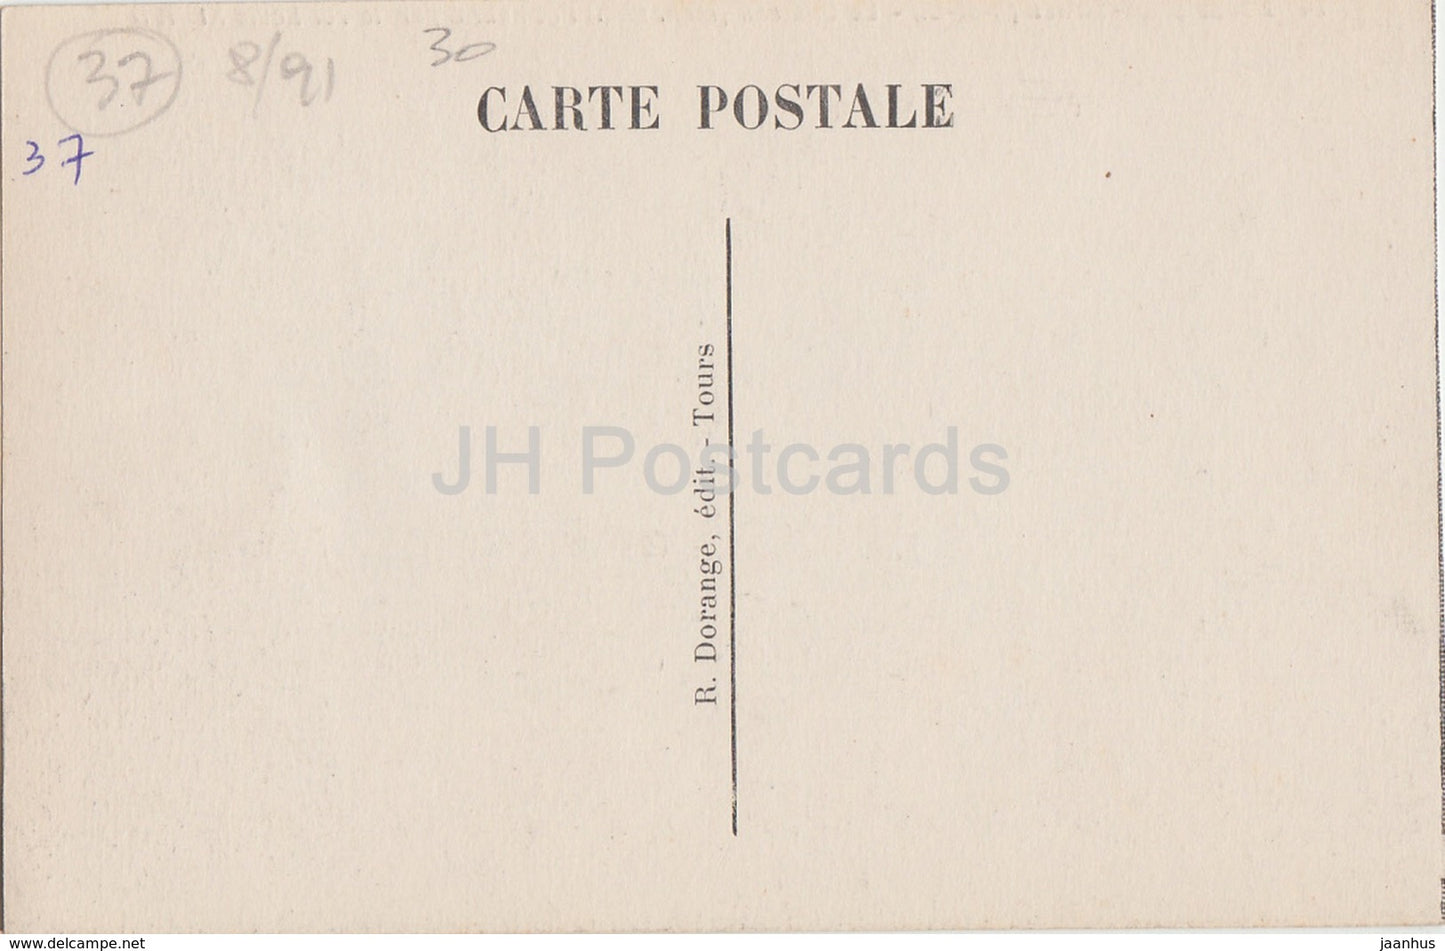 Château de Plessis les Tours - Le Château - Fut Habite par le roi Louis XI château - 14 - carte postale ancienne - France - inutilisé